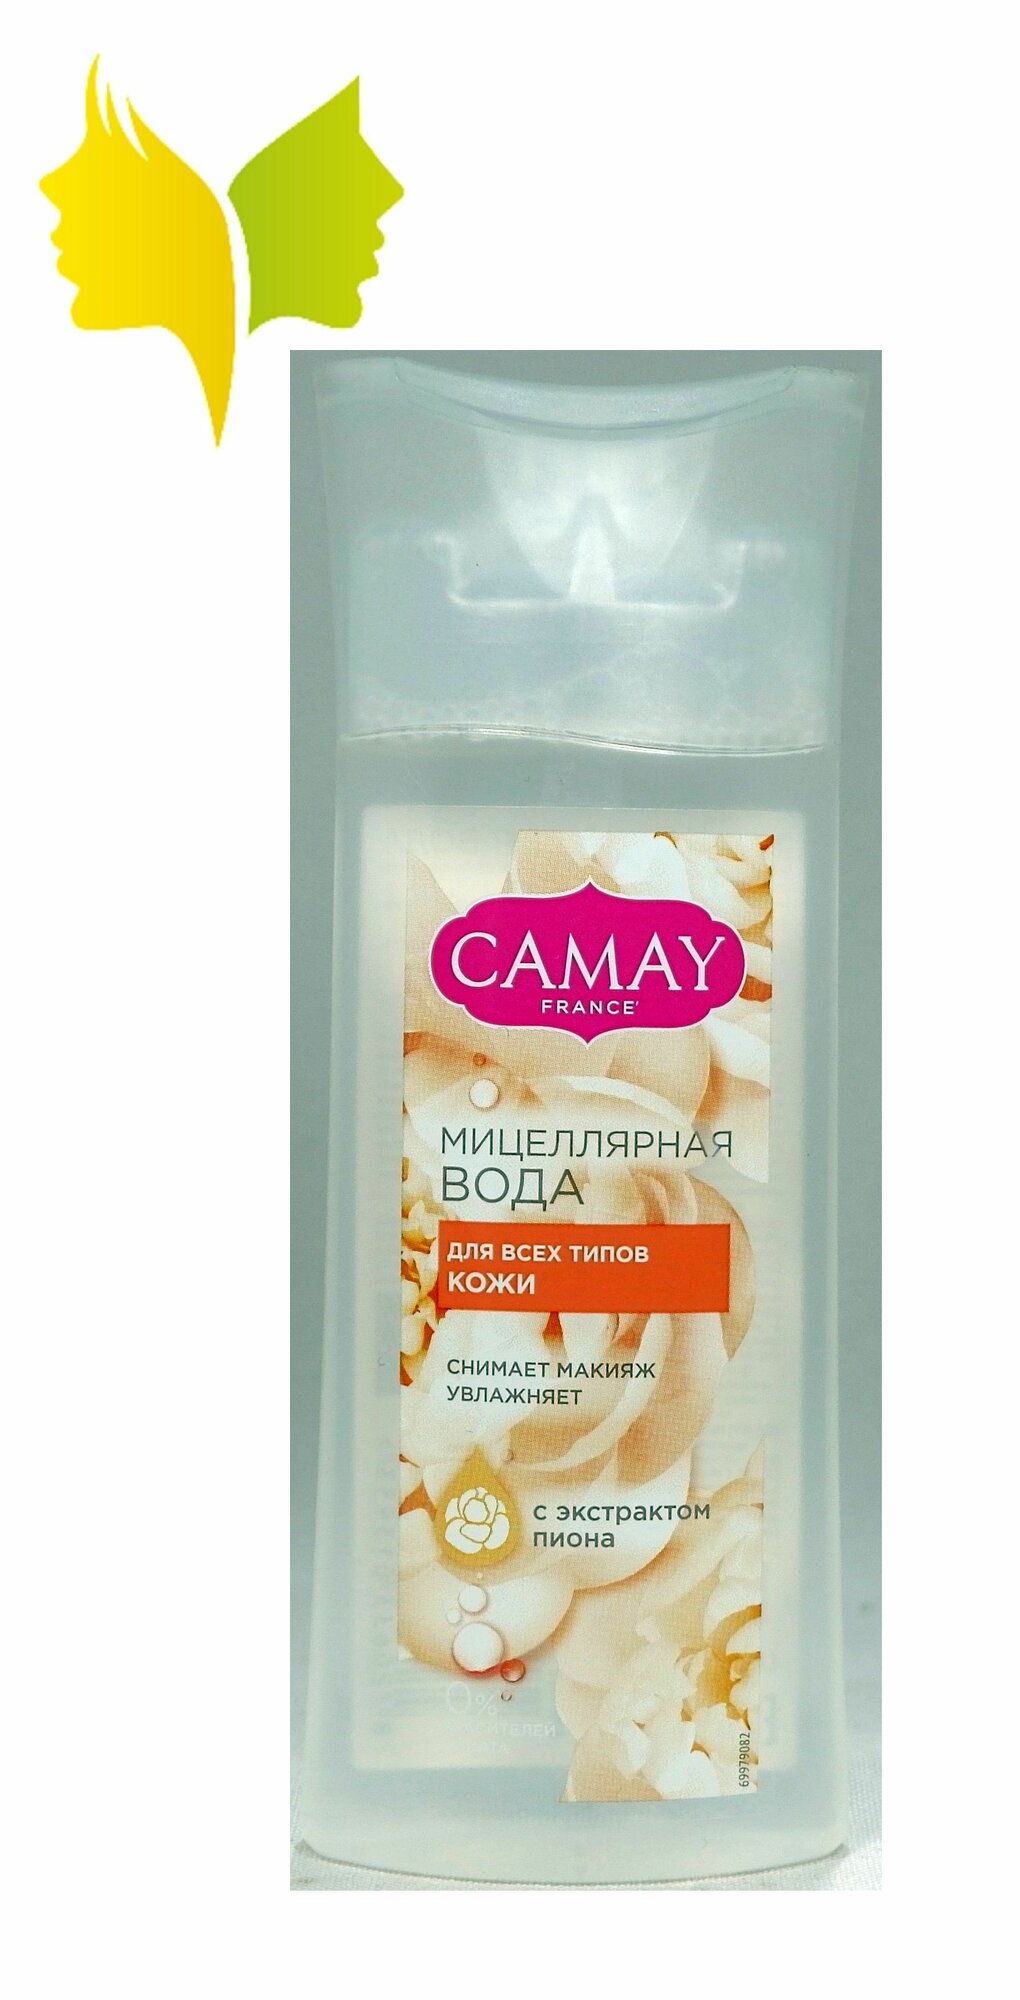 Camay вода мицеллярная для всех типов кожи 100 мл.